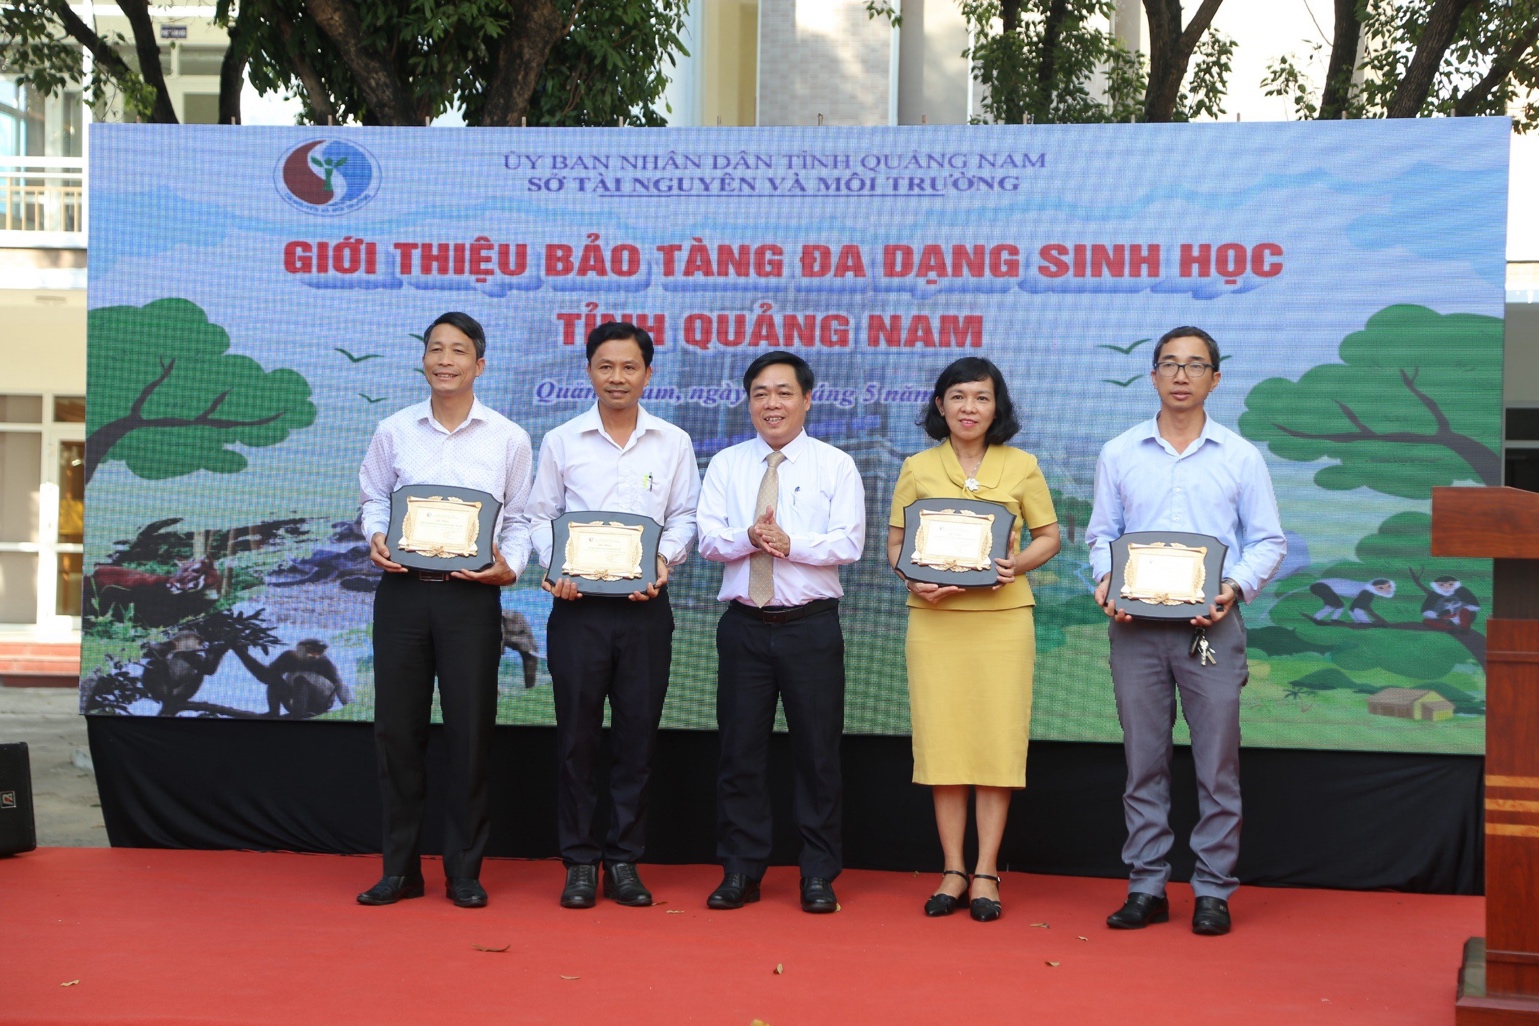 Thăm bảo tàng đa dạng sinh học cấp tỉnh đầu tiên trên cả nước tại Quảng Nam - 1